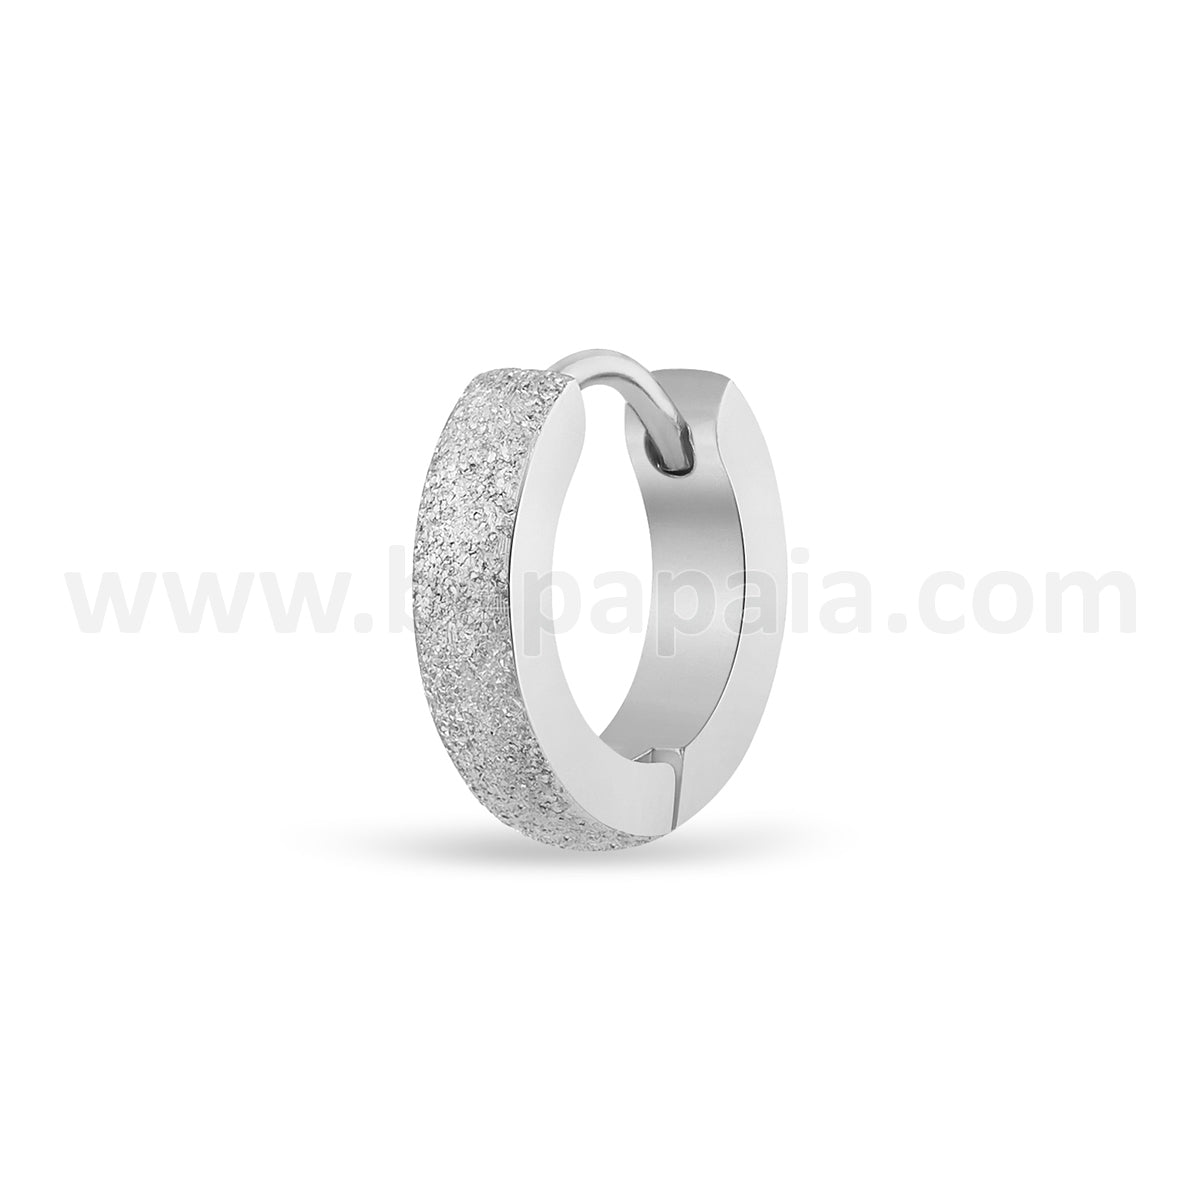 Stainless steel huggies earrings diamond dust style 3 mm